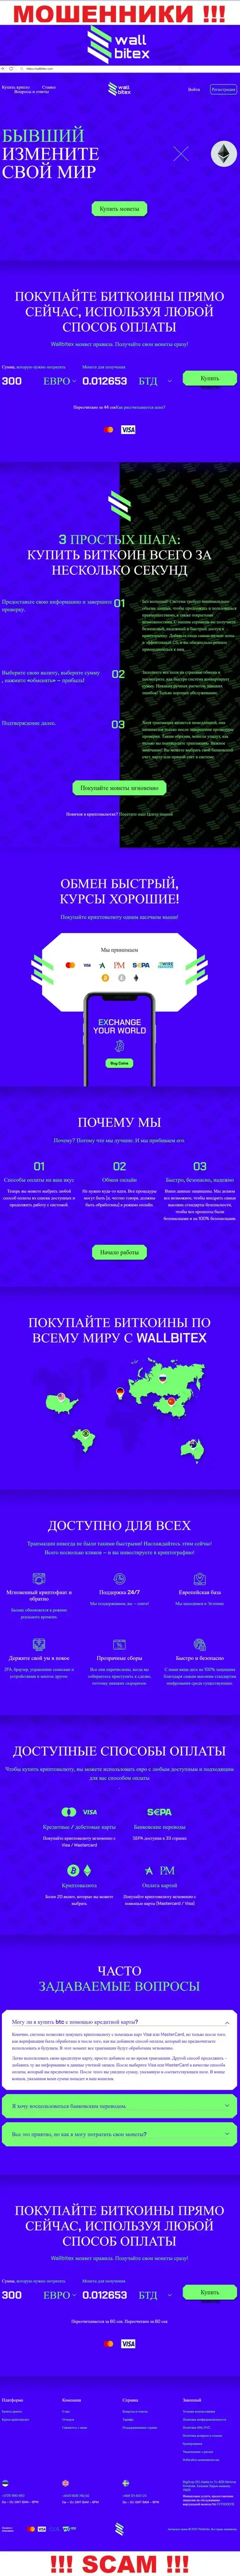 WallBitex Com - это официальный интернет-ресурс мошеннической организации Wall Bitex